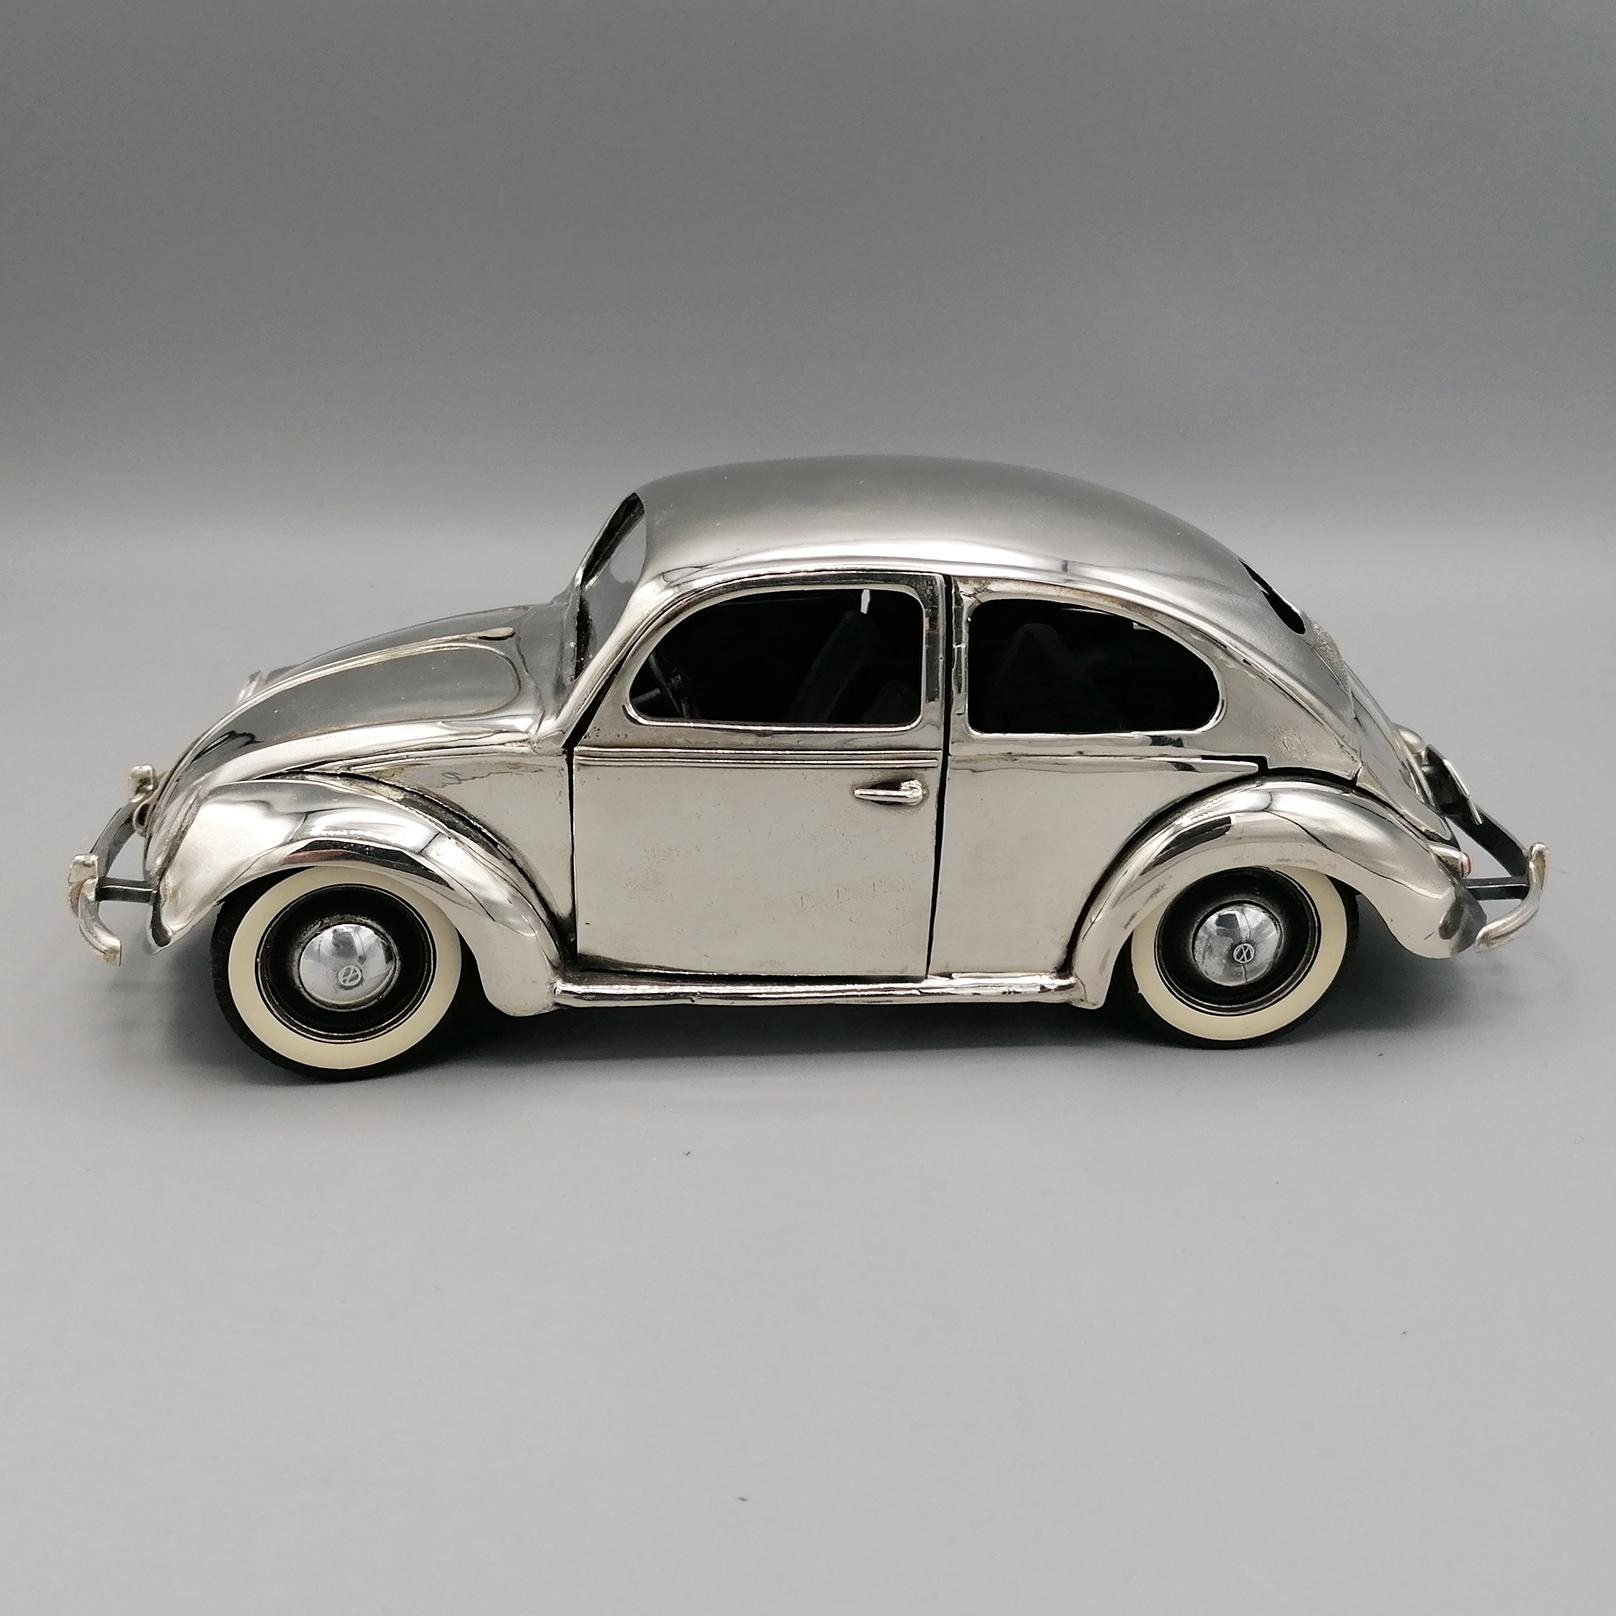 20e siècle Argent italien coccinelle volkswagen typ1 modèle de voiture 1945 circa.
Modèle de voiture Volkswagen Beetle en argent sterling.
La carrosserie du scarabée est moulée, limée et polie à la main pour rendre la surface brillante.
Les portes